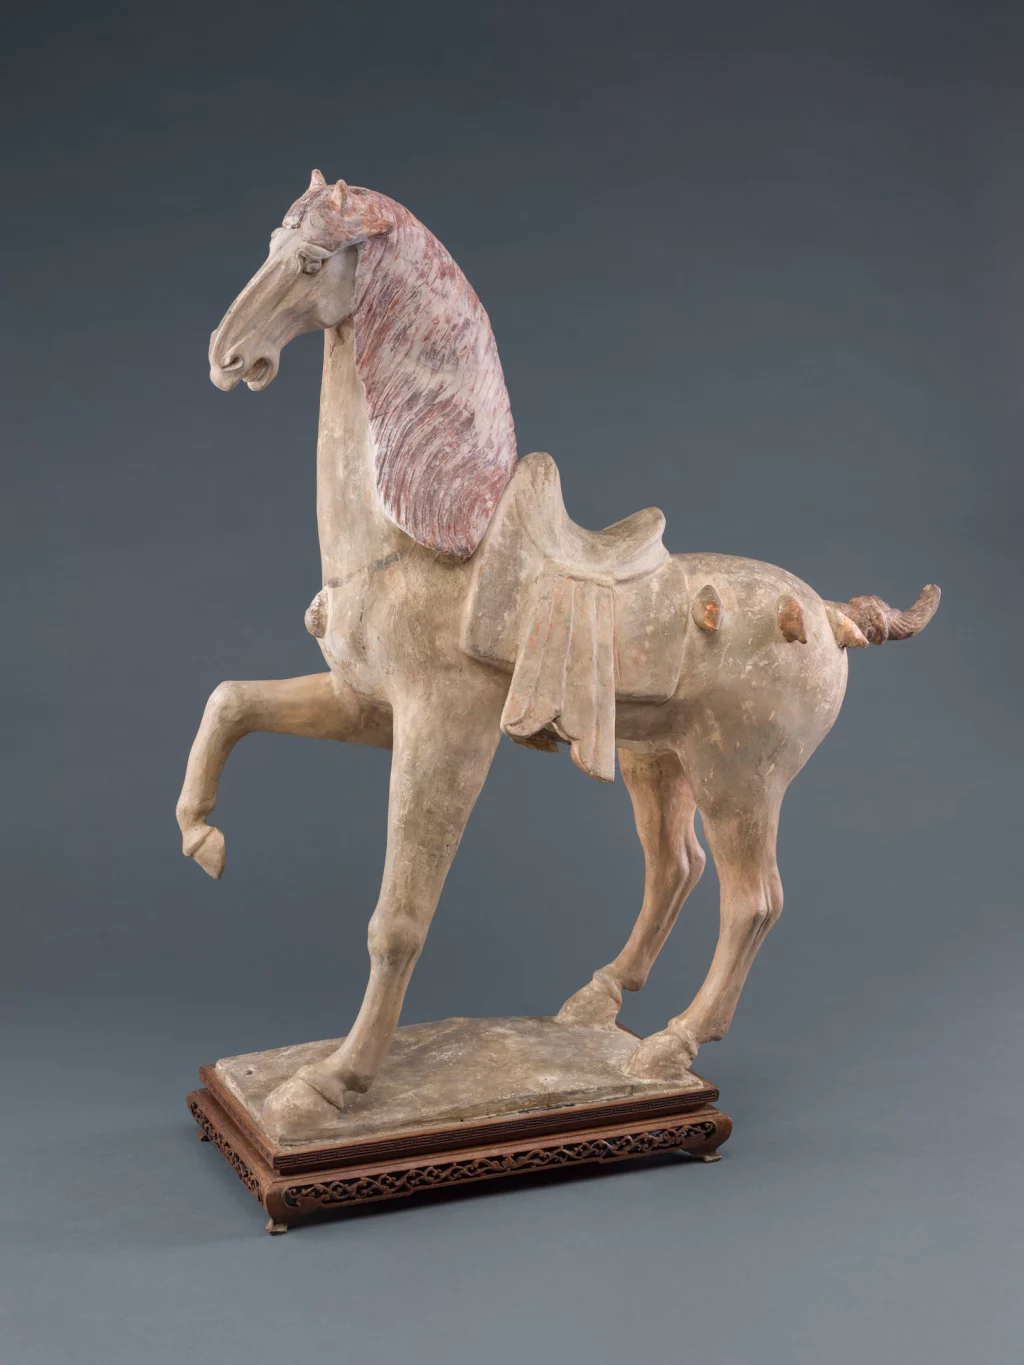 El arte se encuentra con la ciencia en el análisis de una antigua estatua de un caballo danzante